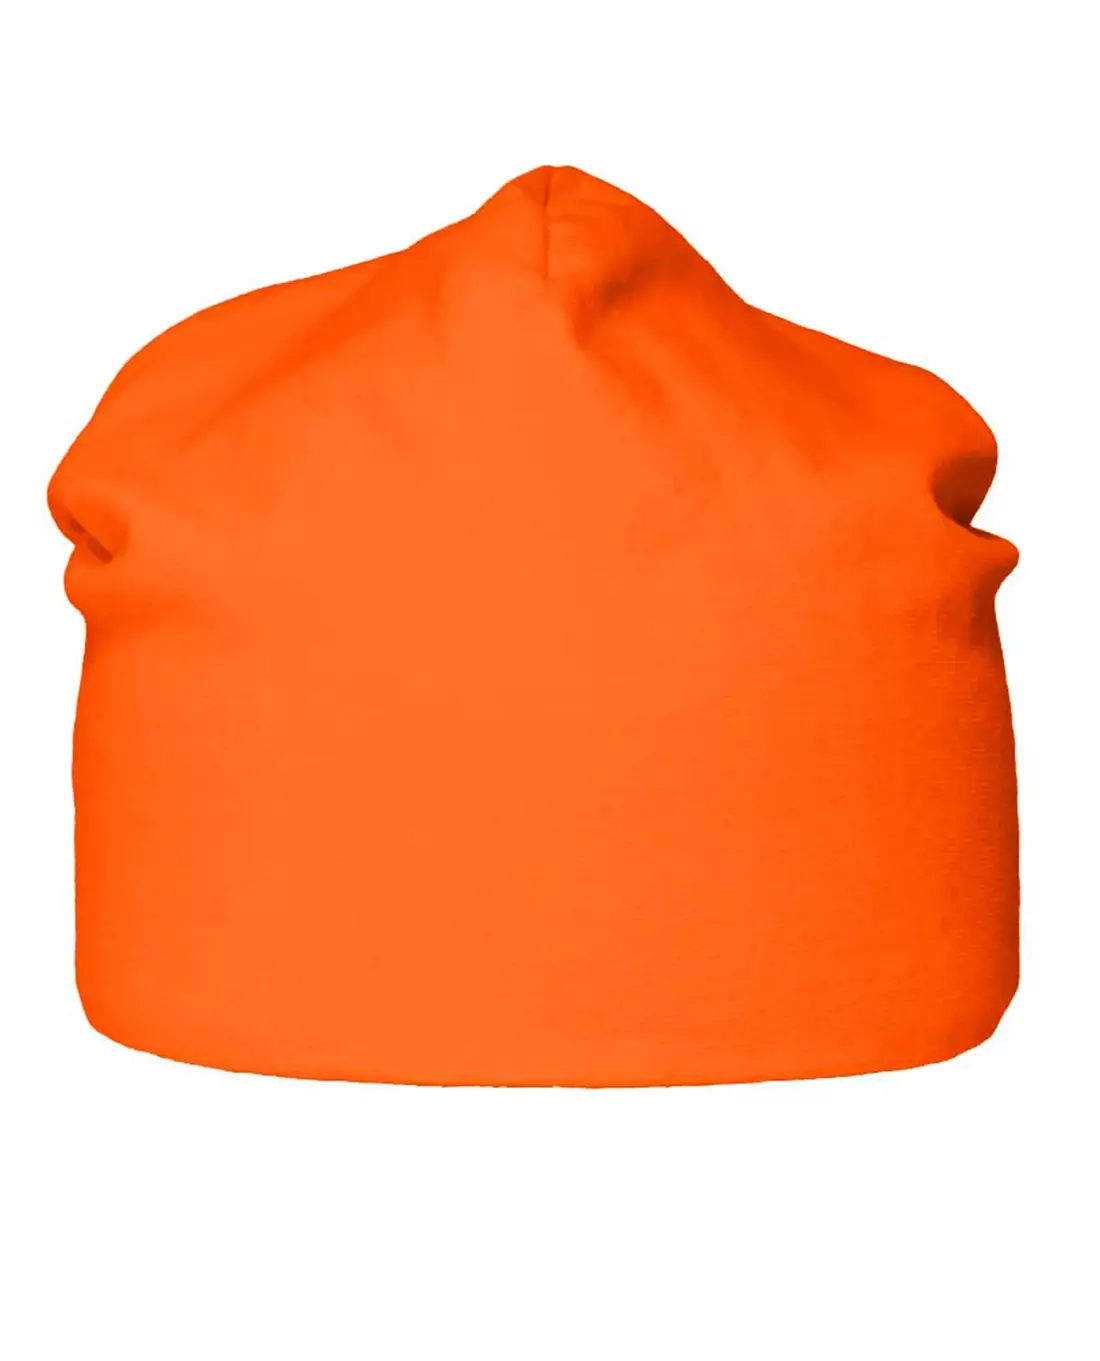 Puijo pipo LONG (28 cm), Orange